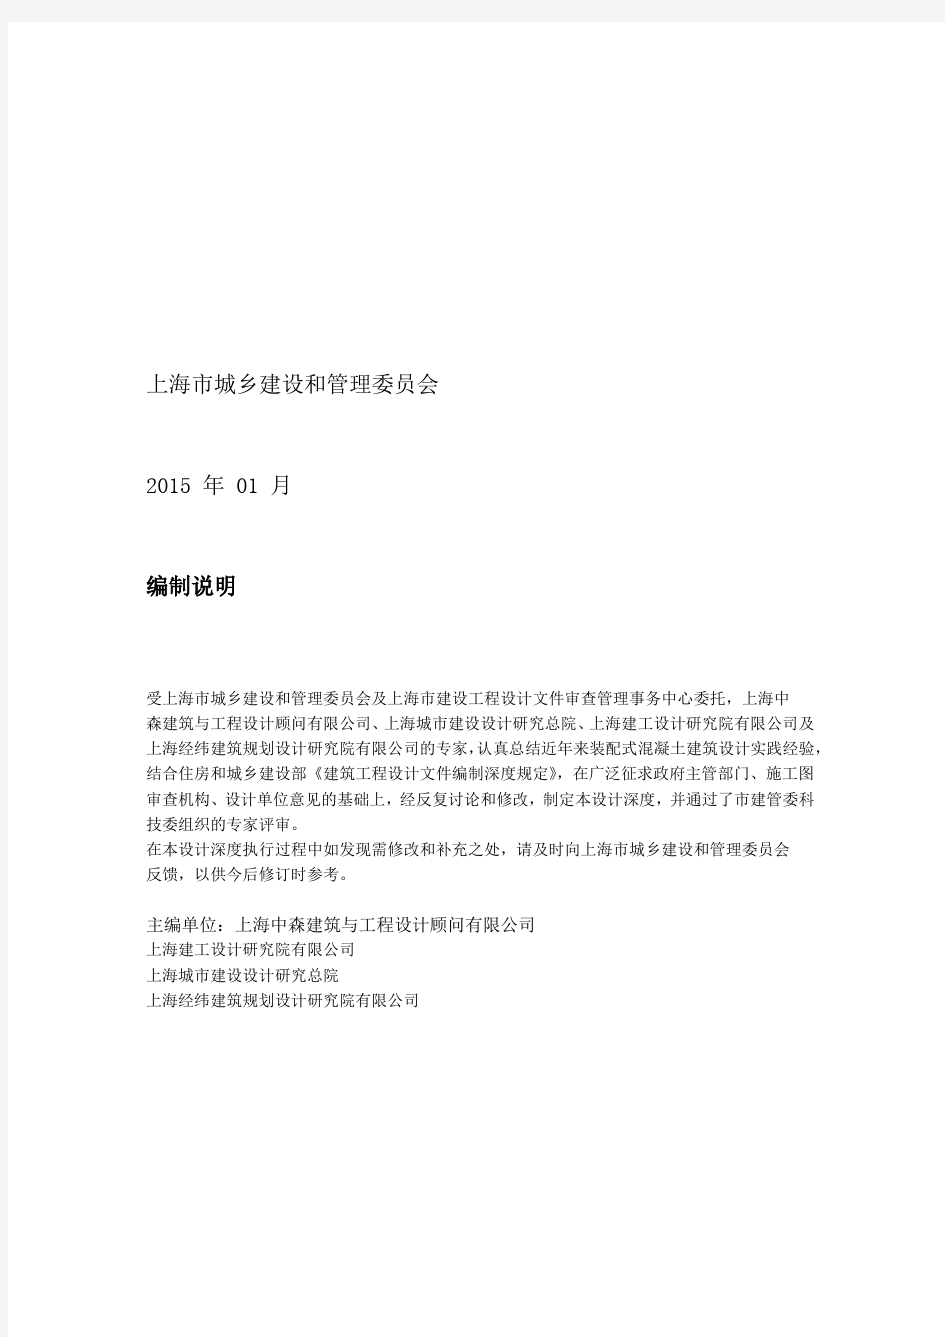 上海市装配式混凝土建筑工程设计文件编制深度规定